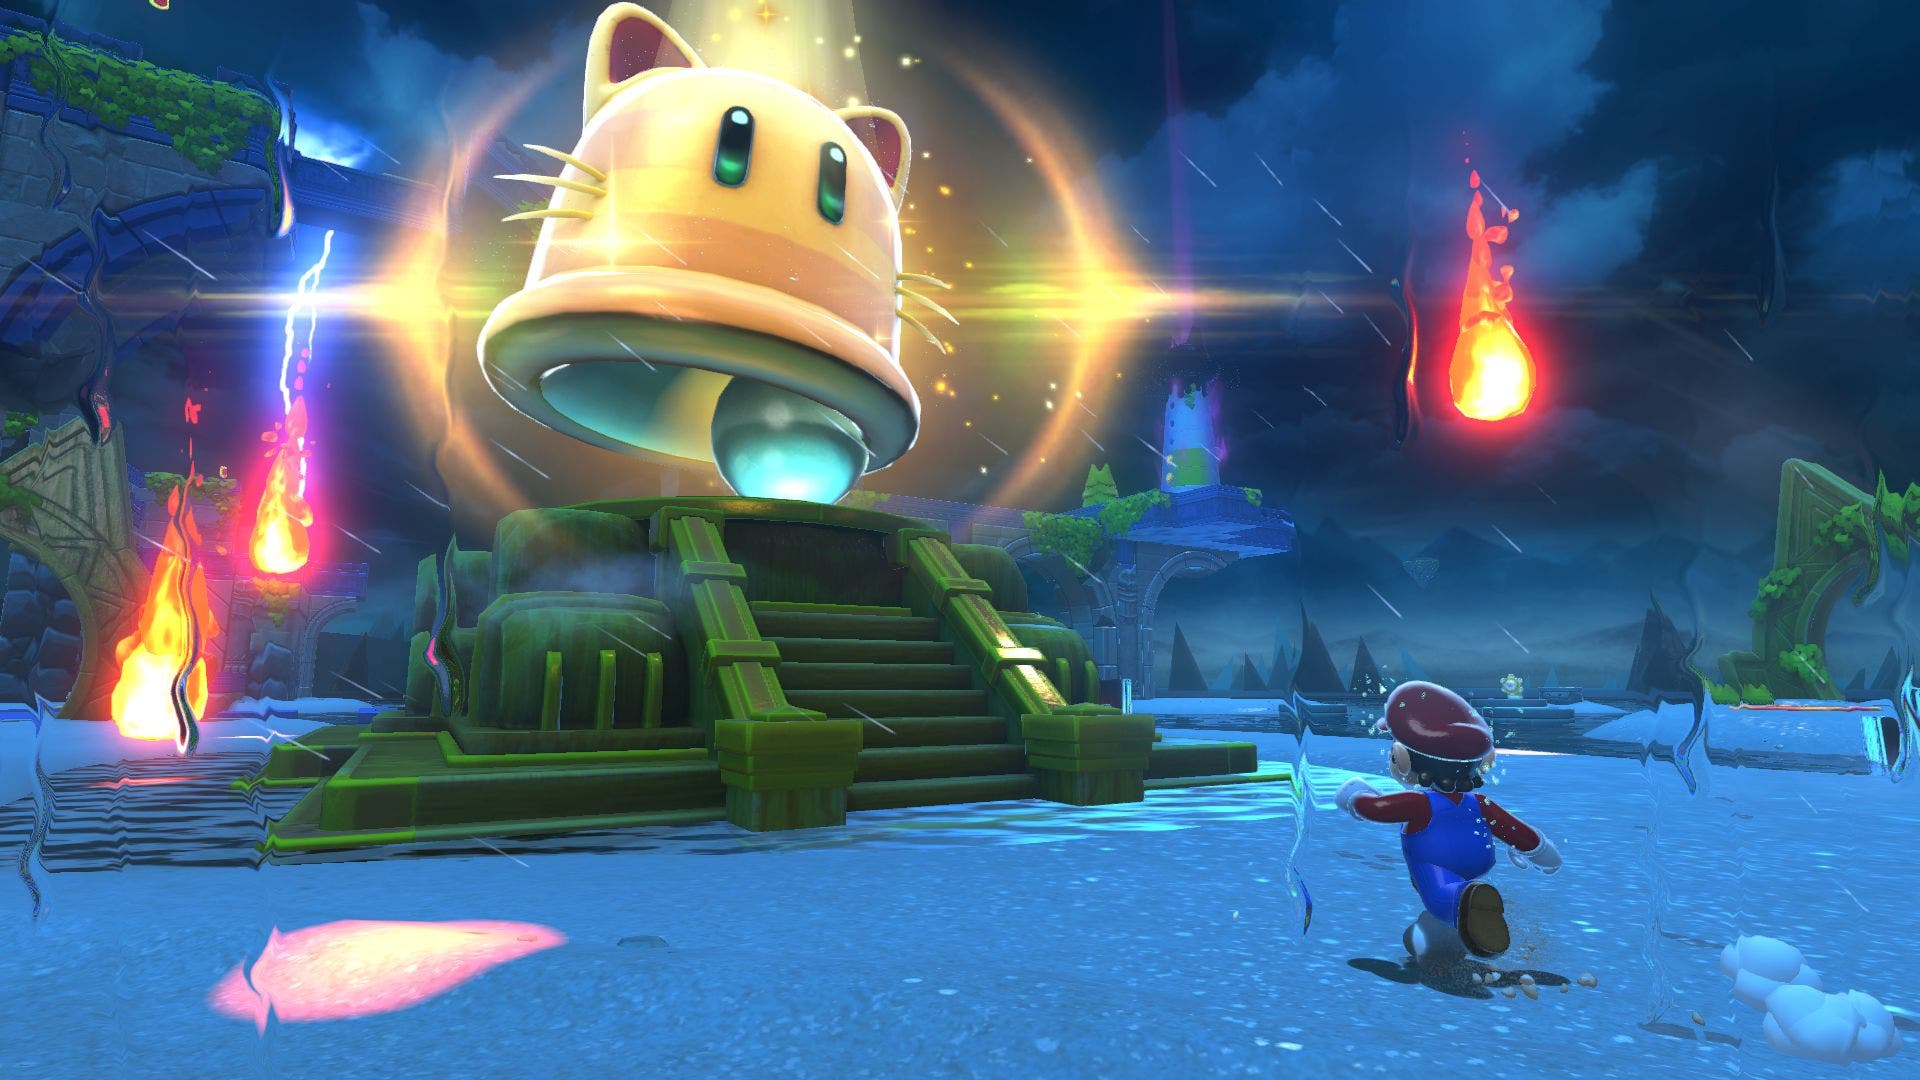 Conocemos nuevos detalles técnicos del desarrollo de Super Mario 3D World + Bowser’s Fury